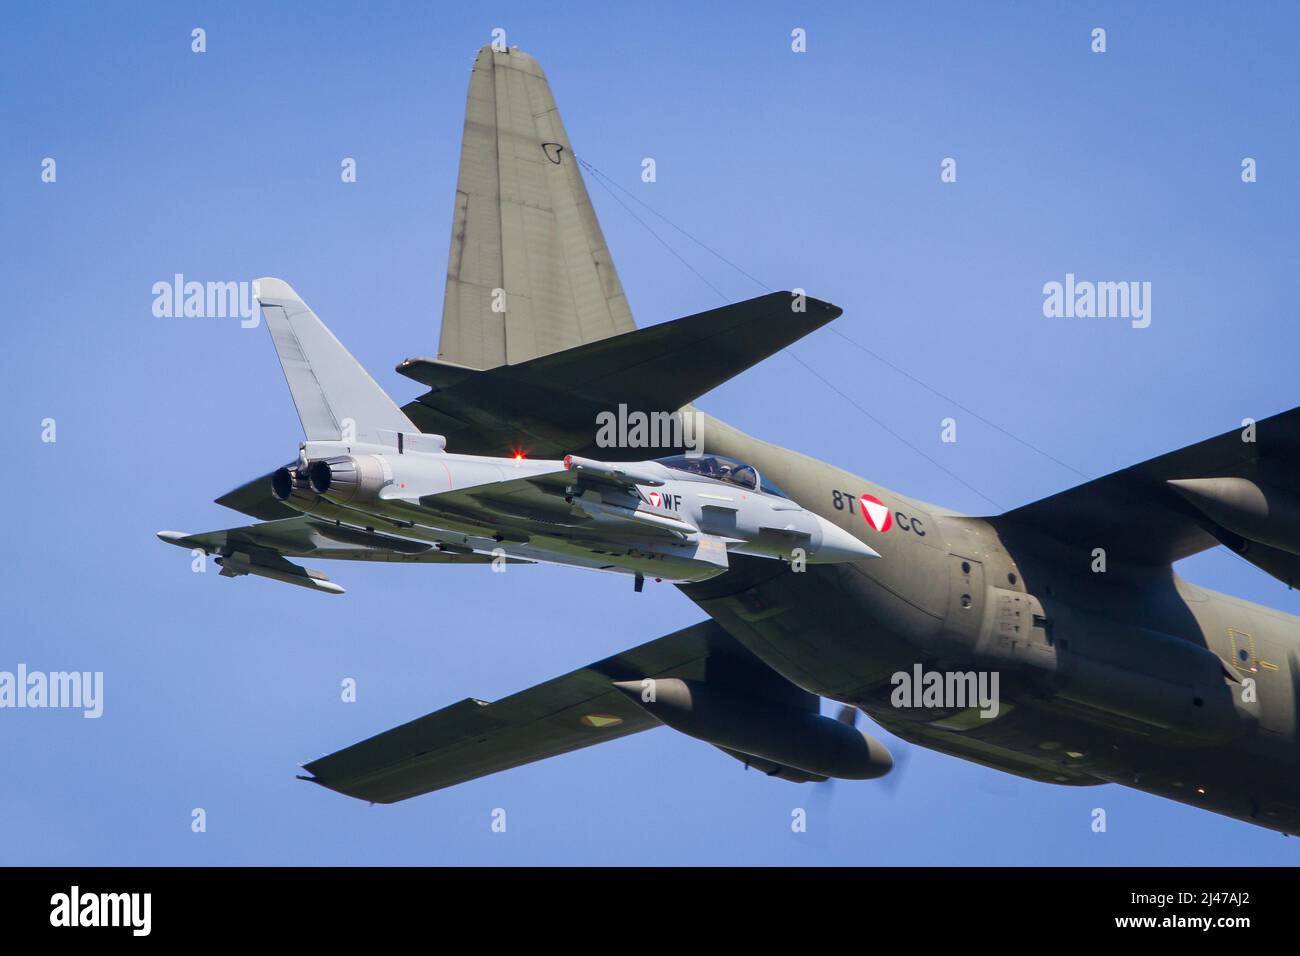 Aviazione militare austriaca Eurofighter jet intercettare un aereo da trasporto C-130 Hercules in una missione di addestramento Foto Stock